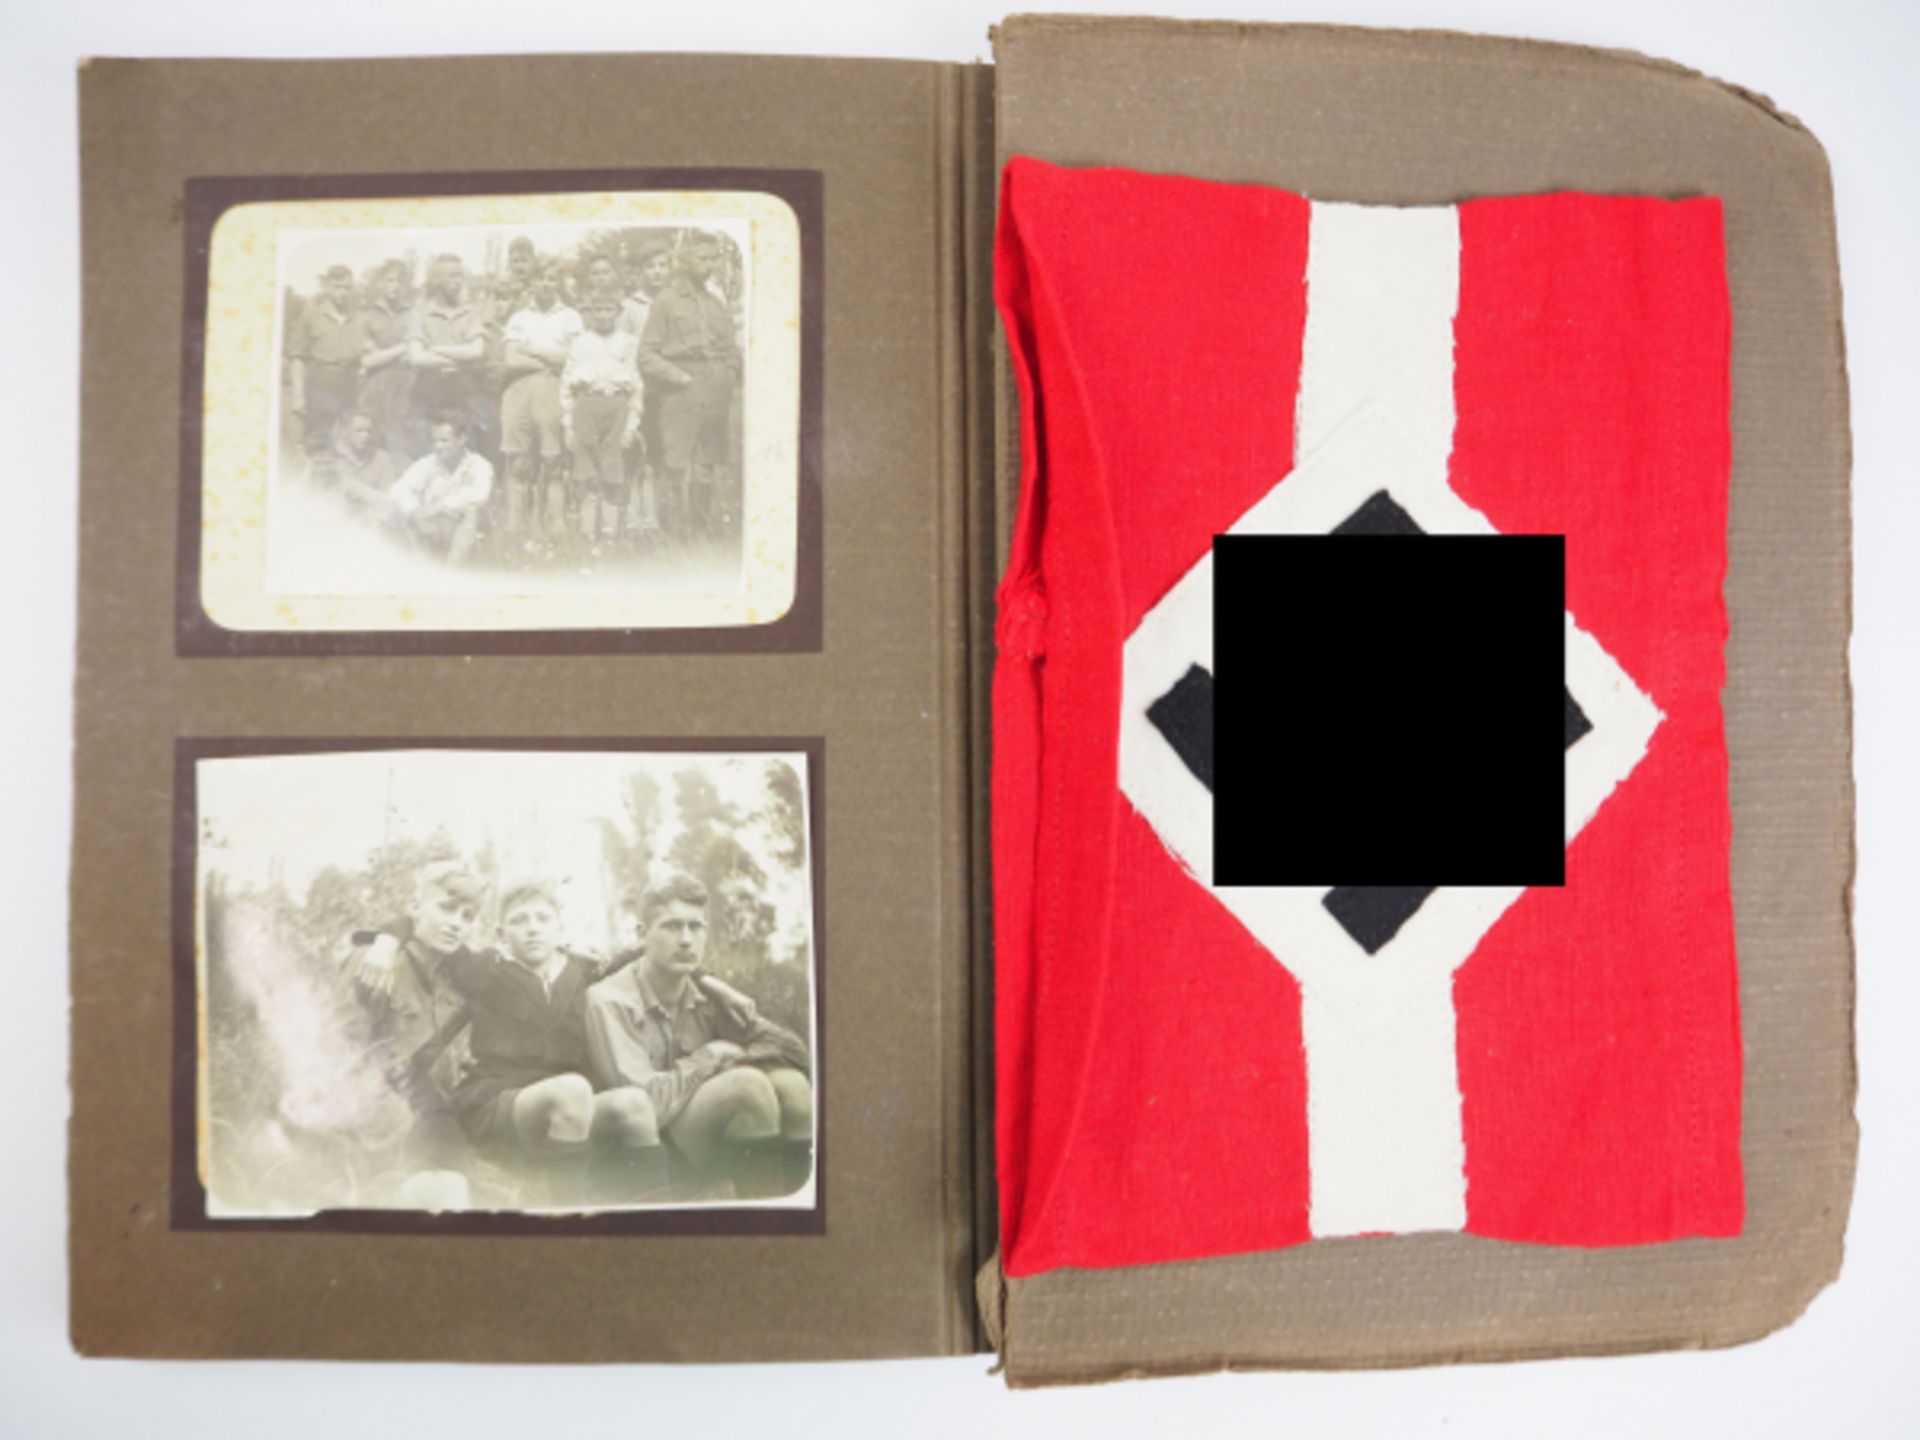 HJ Fotoalbum.Brauner Pappeinband, mit 46 Fotos, teils beschriftet, beginnt im Jahre 1926, mit frühen